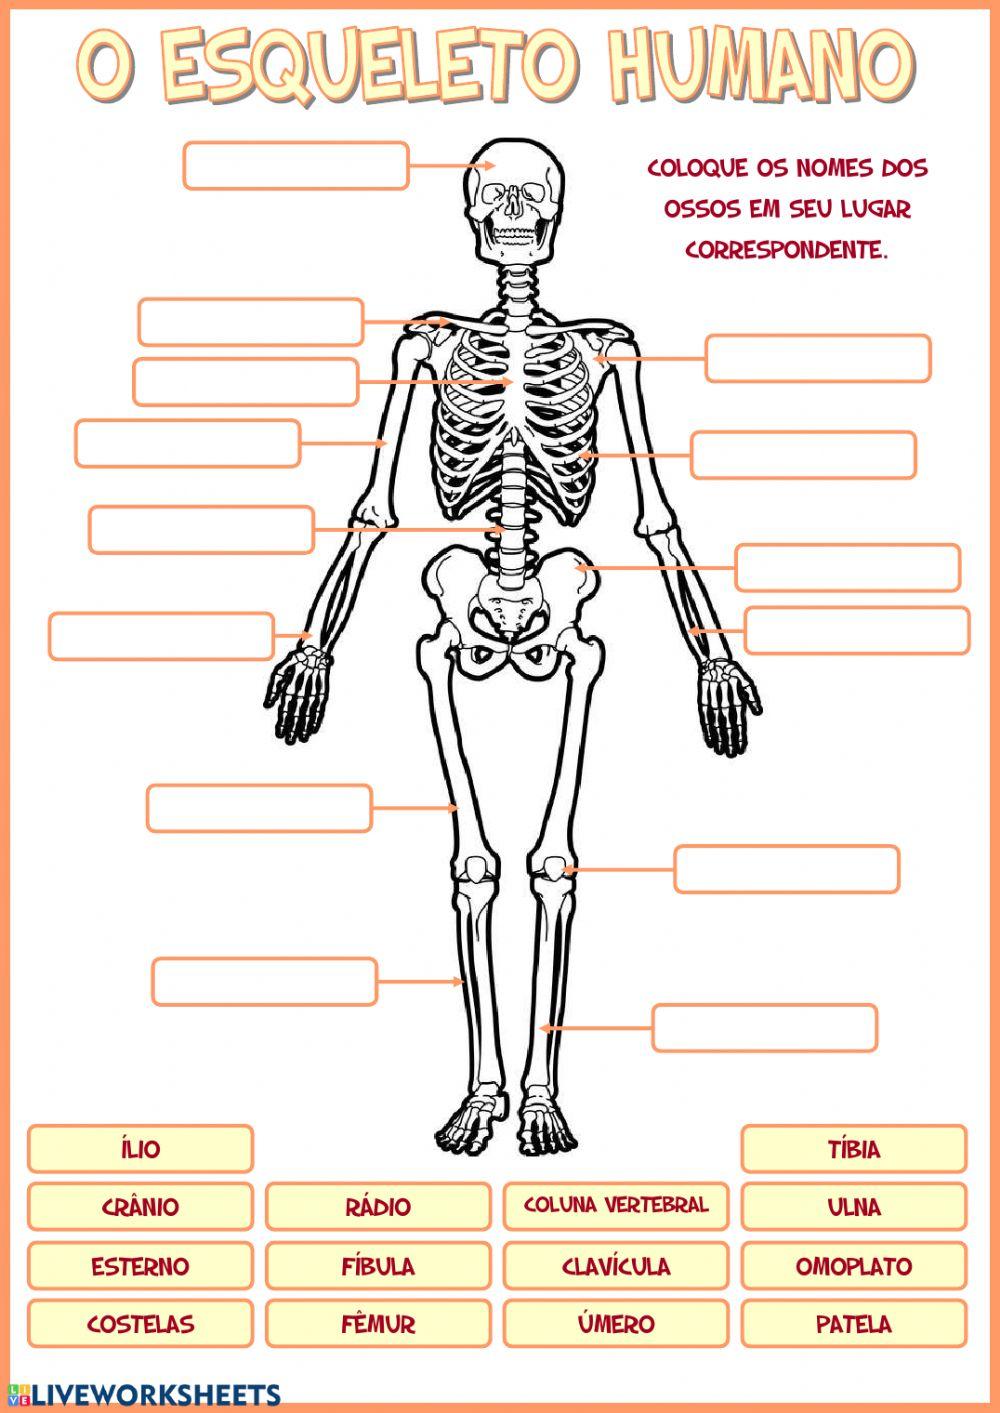 O esqueleto humano